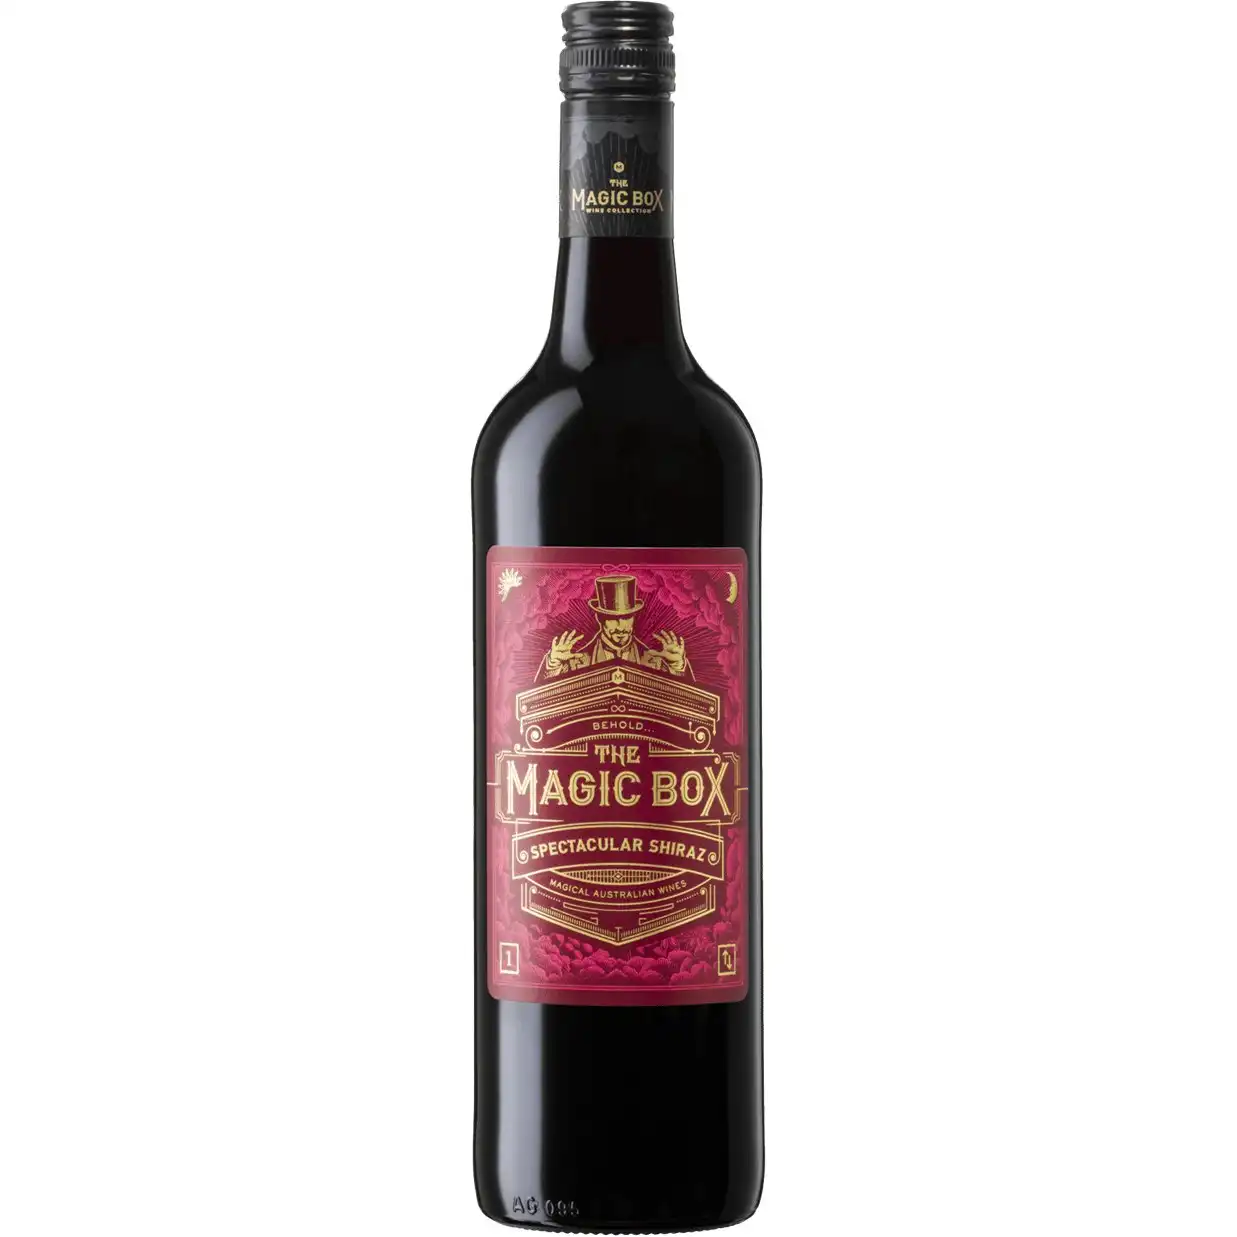 Magic Box Collection Spectacular Shiraz 2020 (6 bottles)